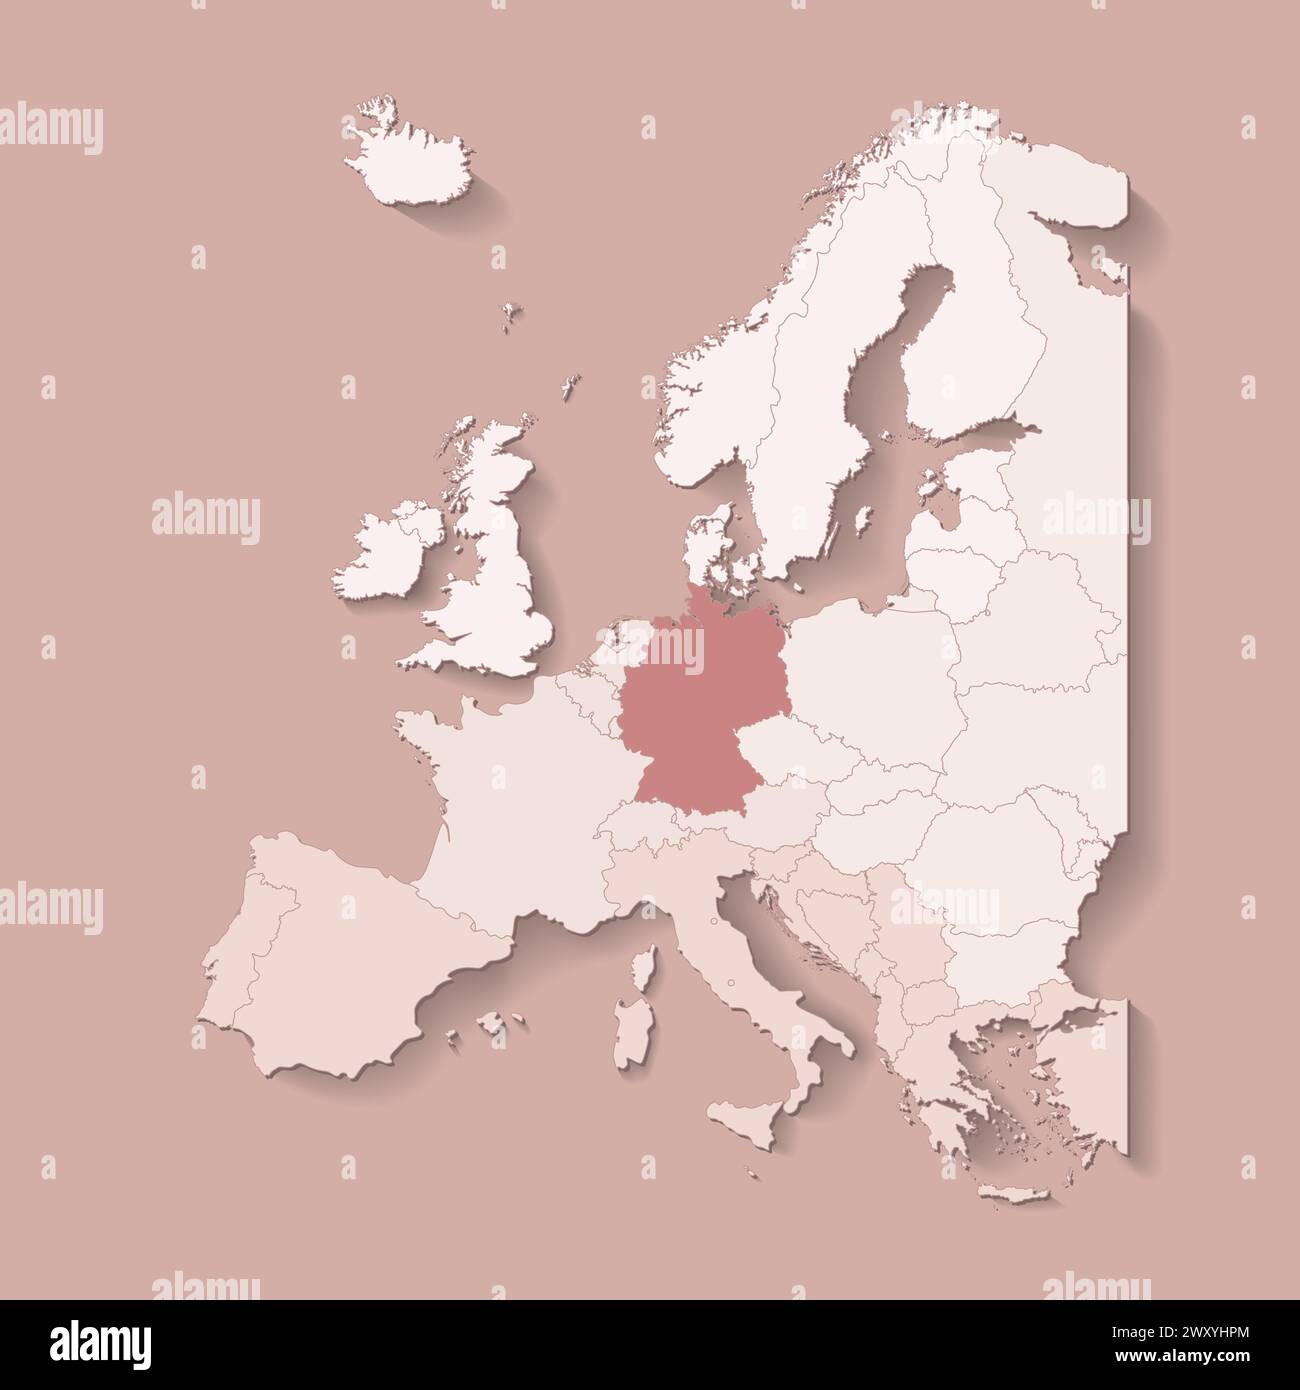 Illustrazione vettoriale con terra europea con confini di stati e paese contrassegnato Germania. Mappa politica di colore marrone con occidentale, sud e così via Illustrazione Vettoriale